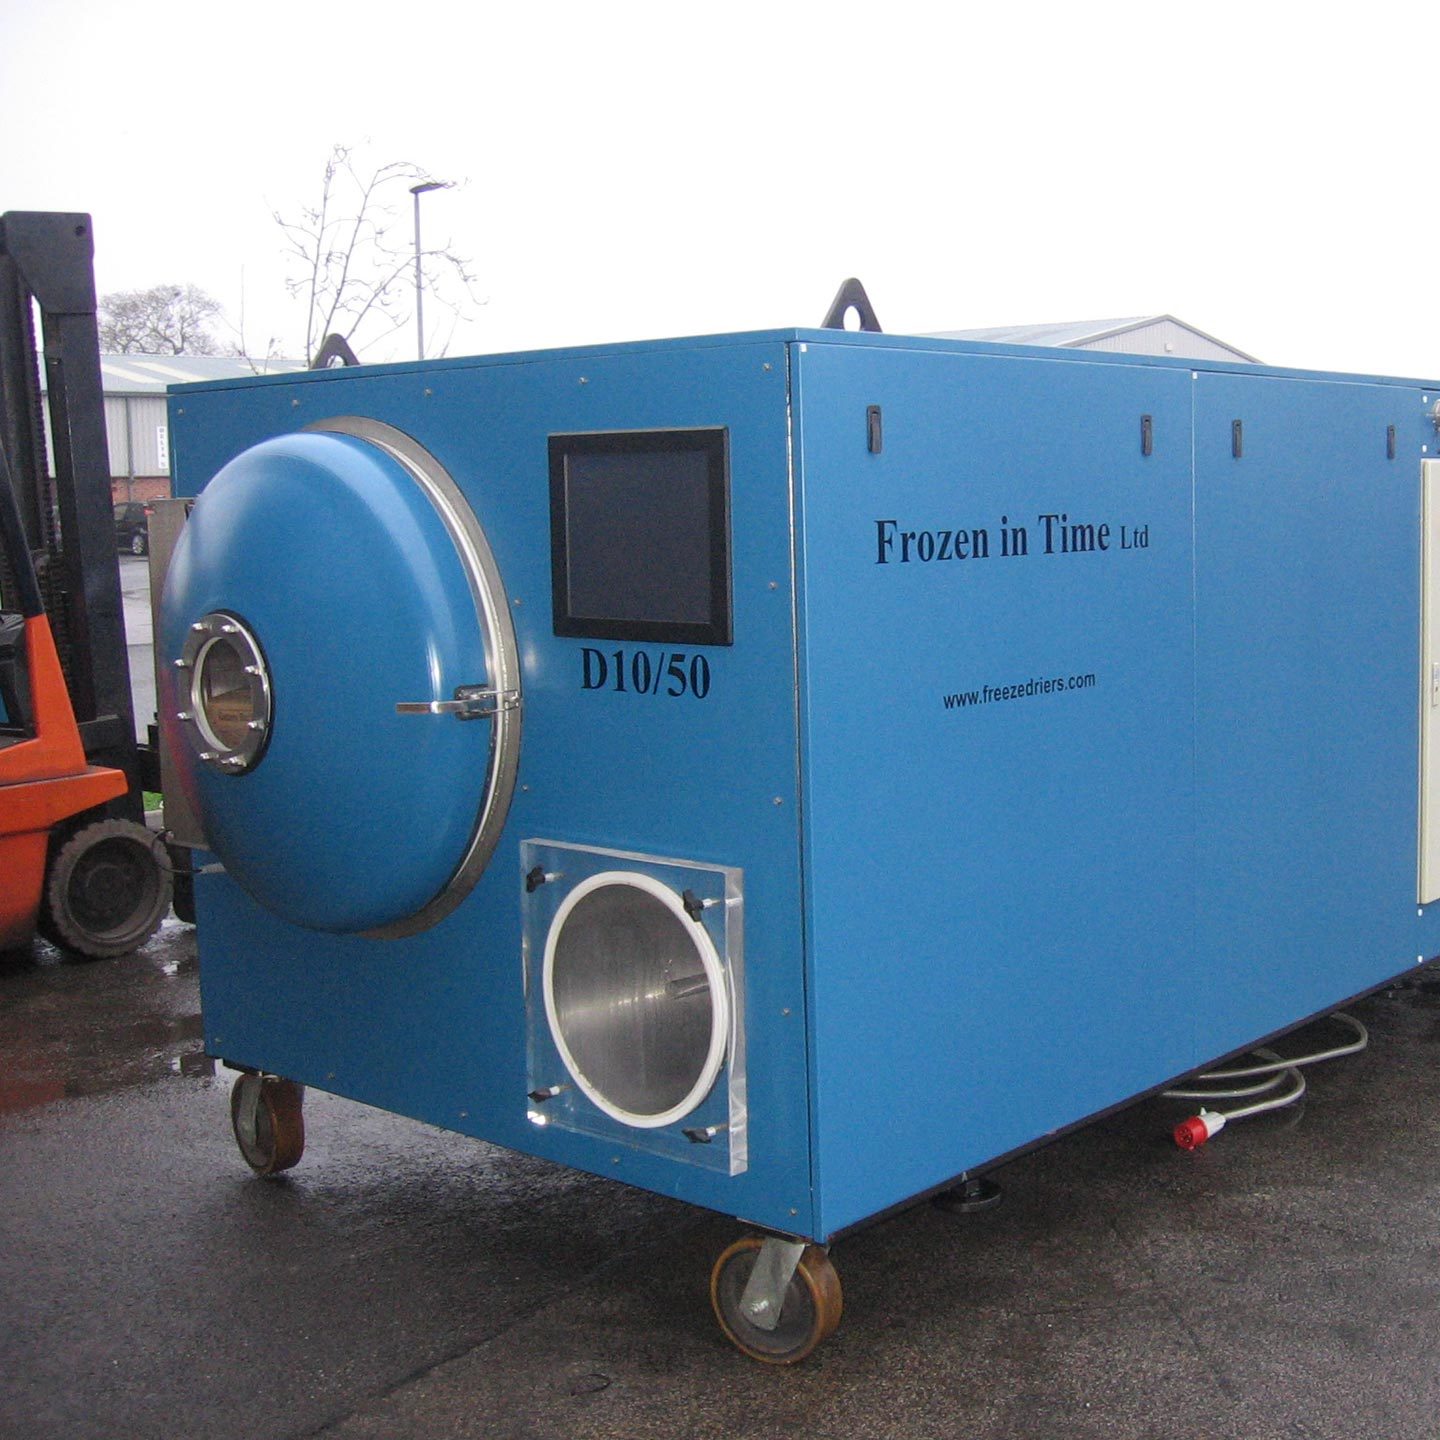 A bespoke freeze drying unit